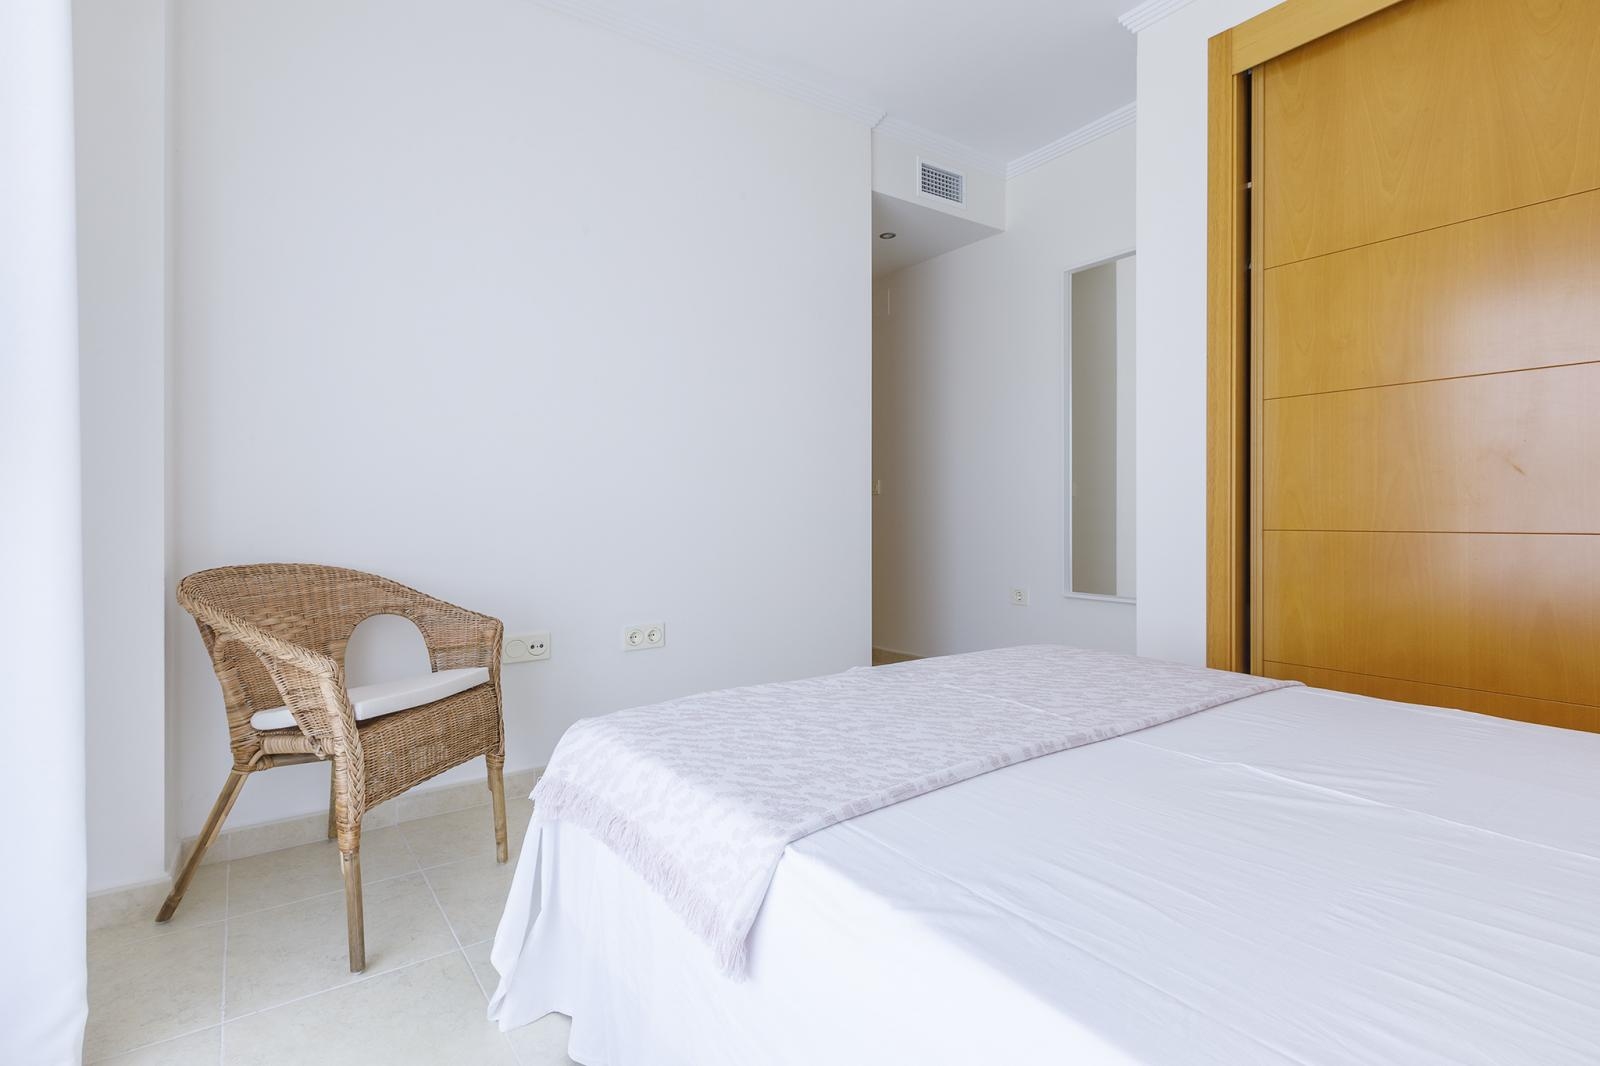 Magnificent two bedroom apartment in Torre del Mar, Malaga Costa del Sol